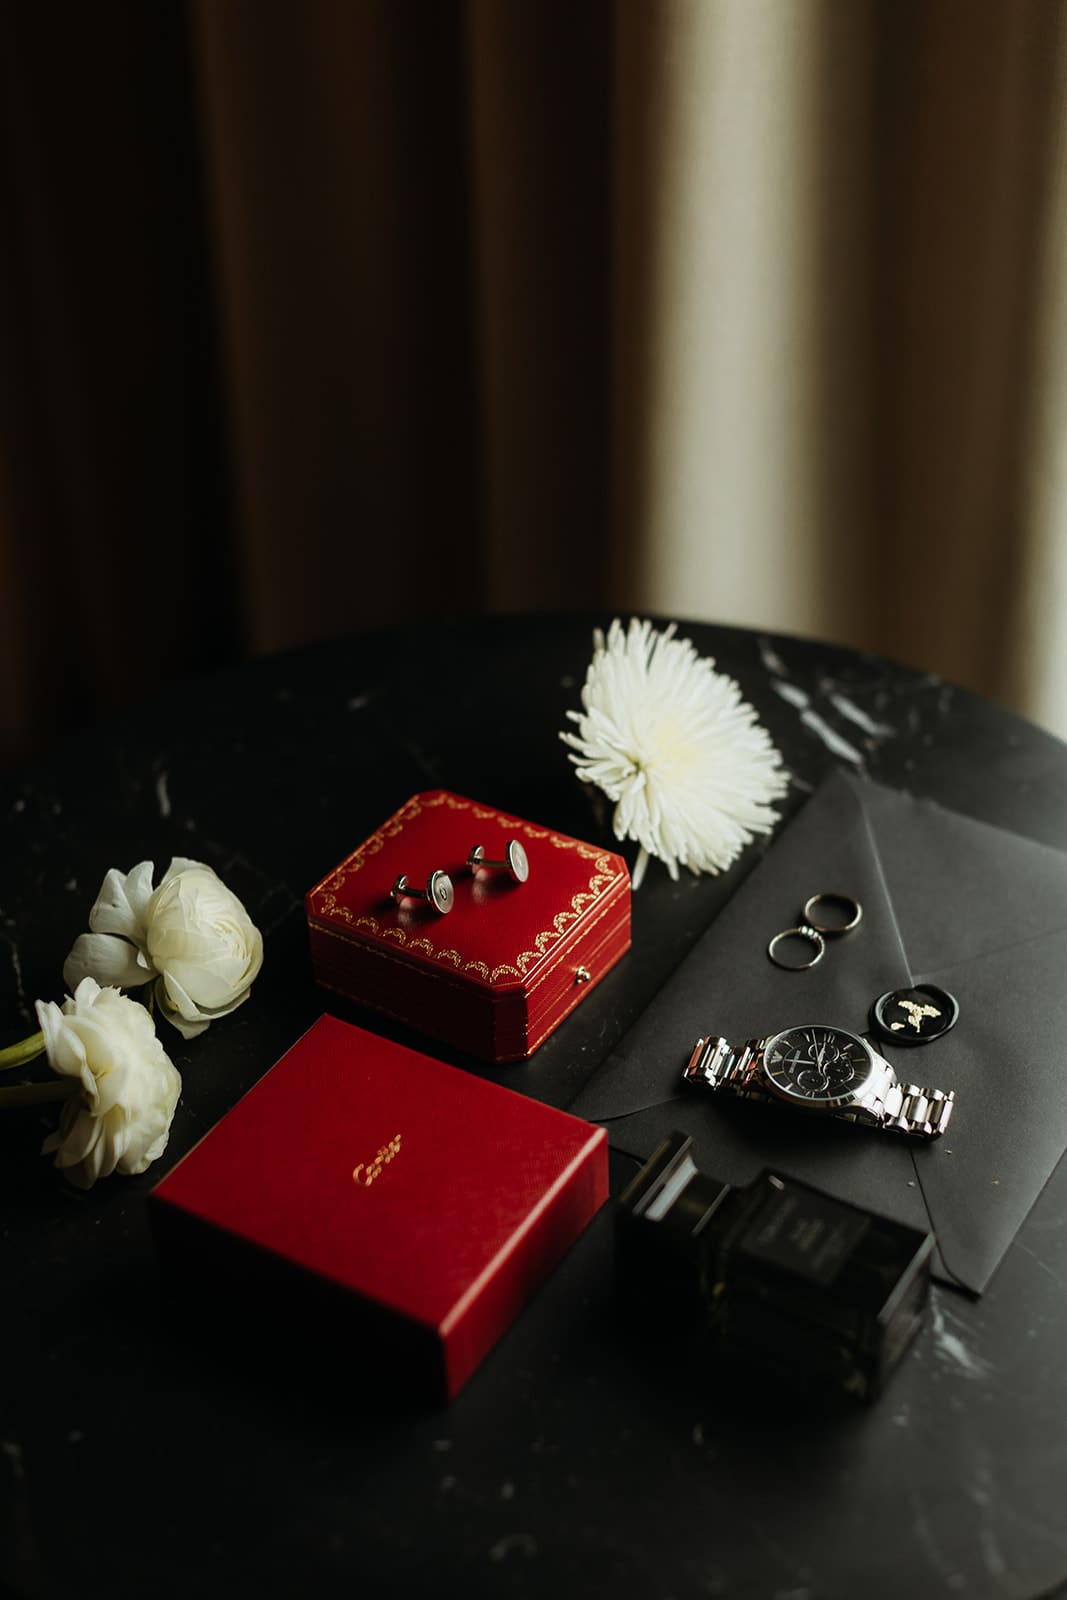 Accesorios elegantes de boda para el novio: Gemelos Cartier, anillos y reloj refinado